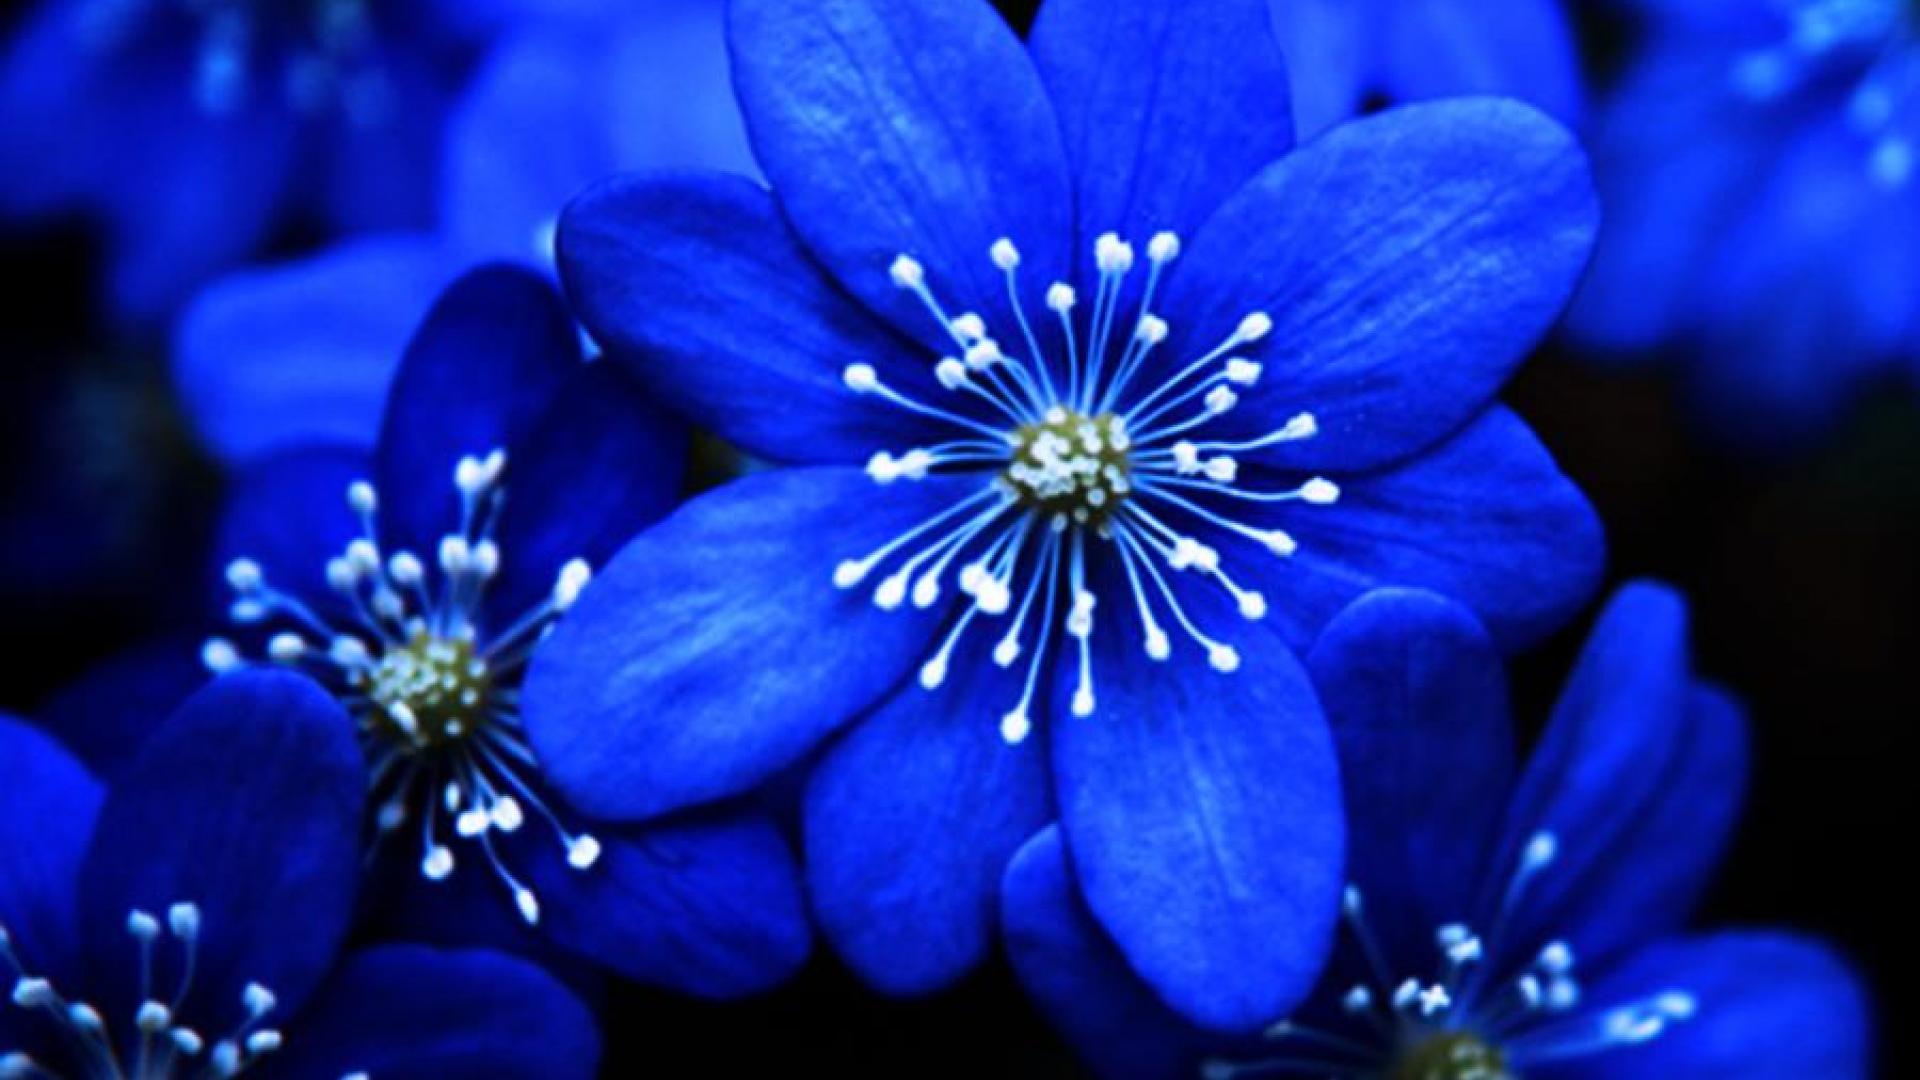 Blue Flowers As Decors For Weddings | Frett Board